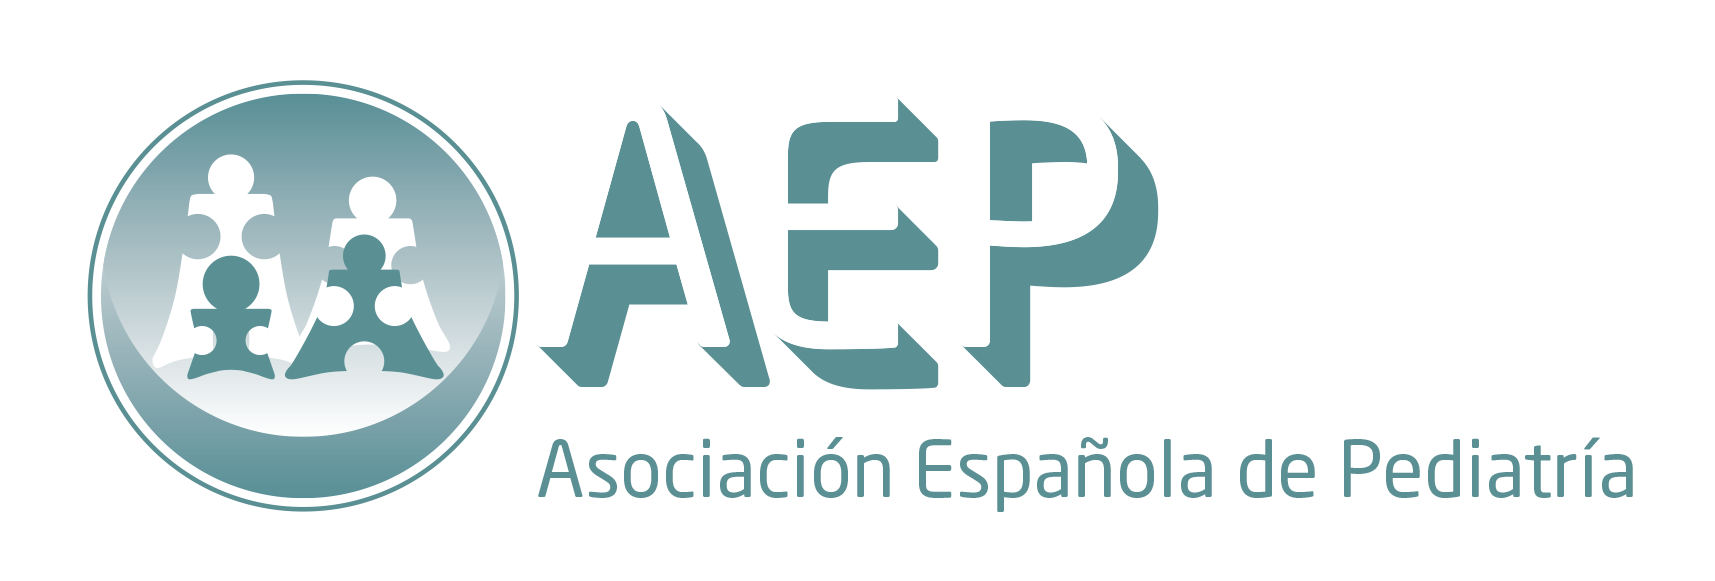 Asociación Española de Pediatría (AEP)